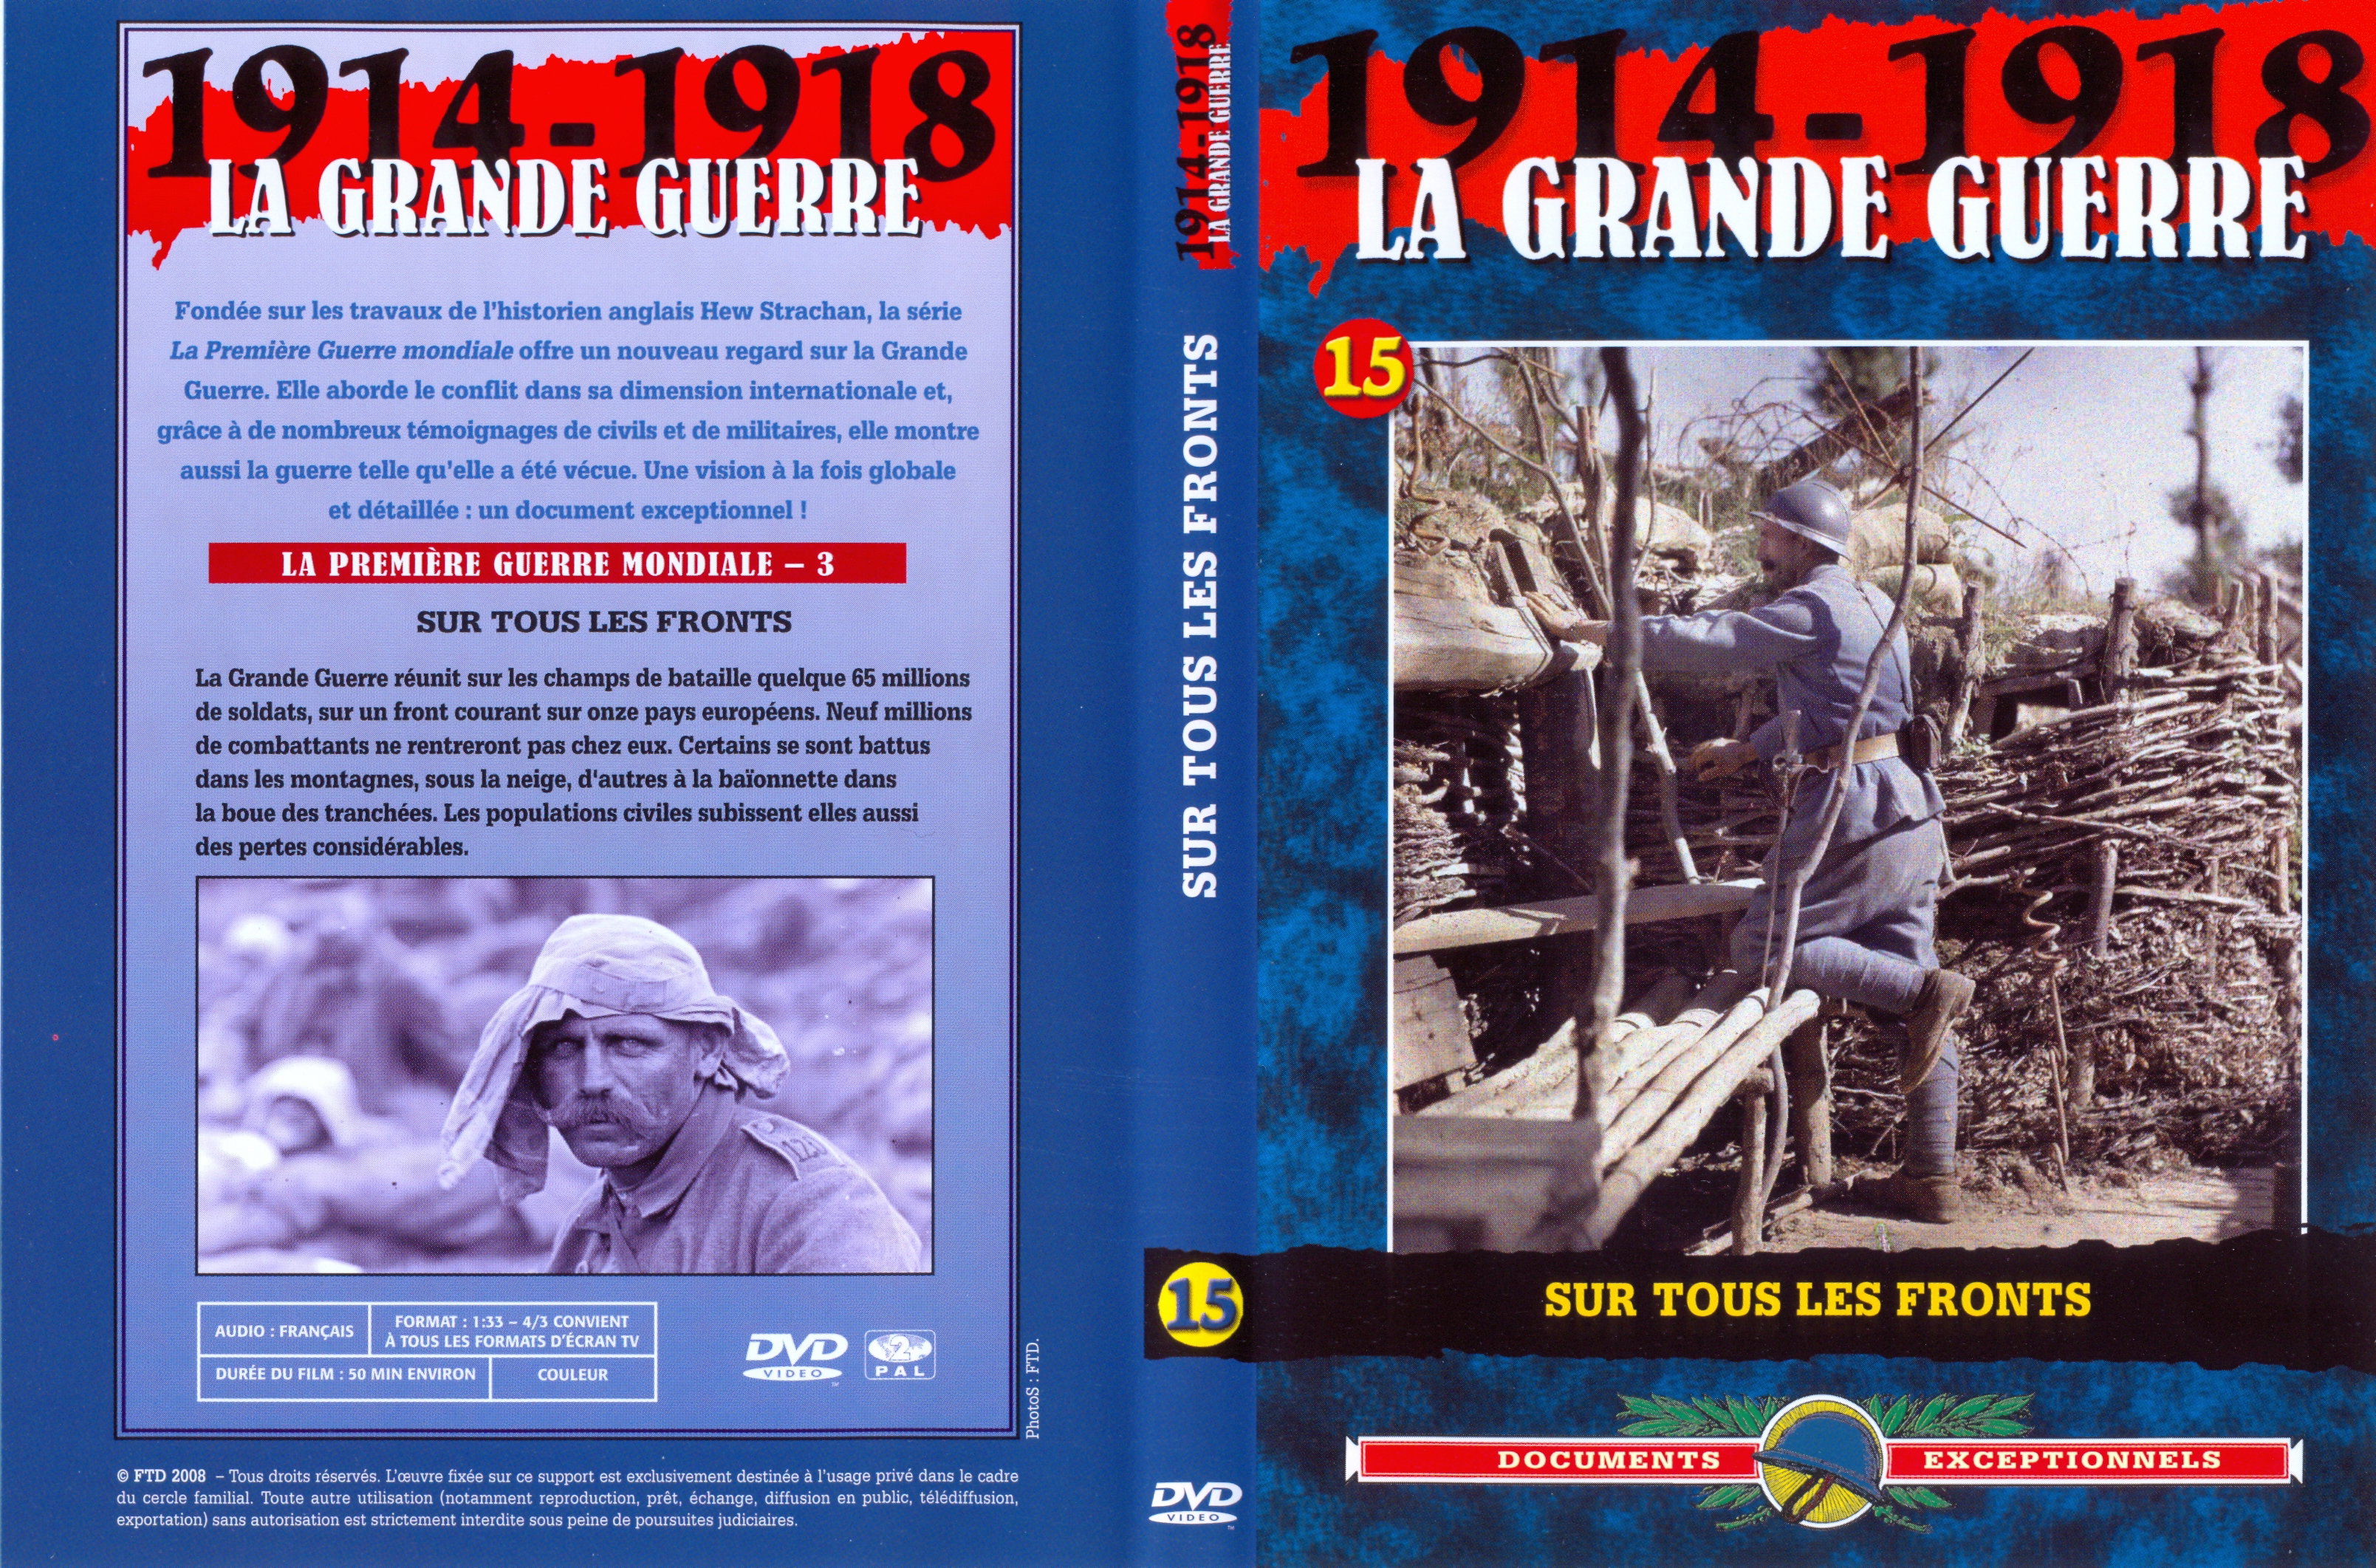 Jaquette DVD La grande guerre 1914 1918 vol 15